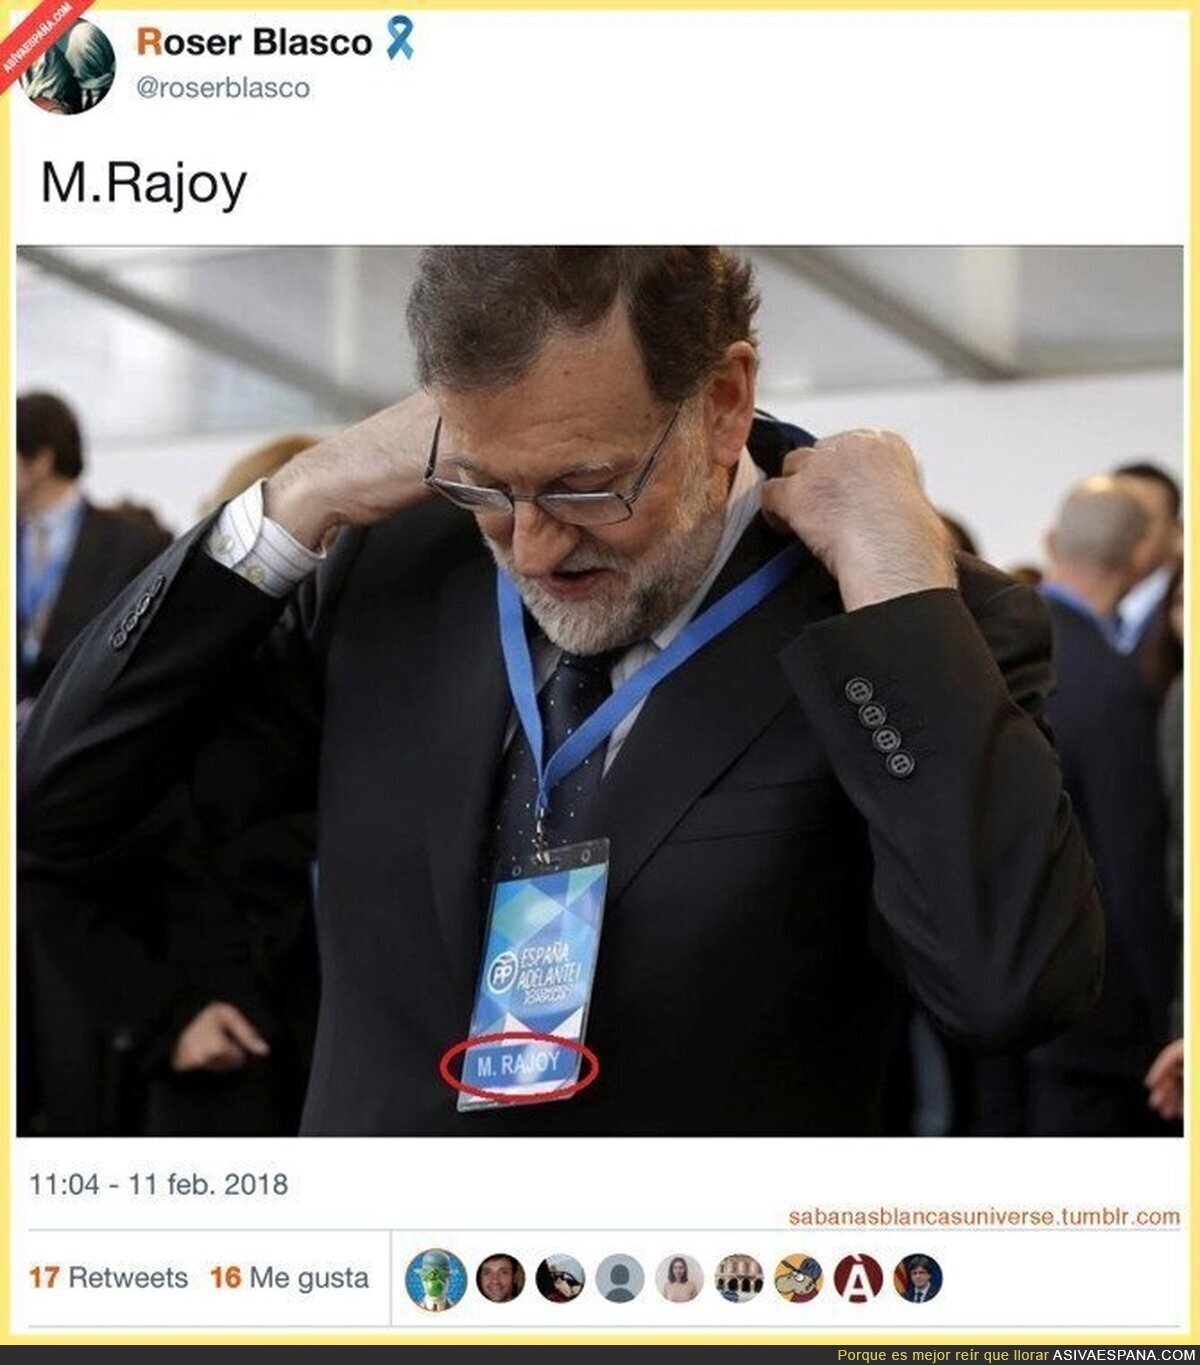 Se confirma la identidad de M. Rajoy